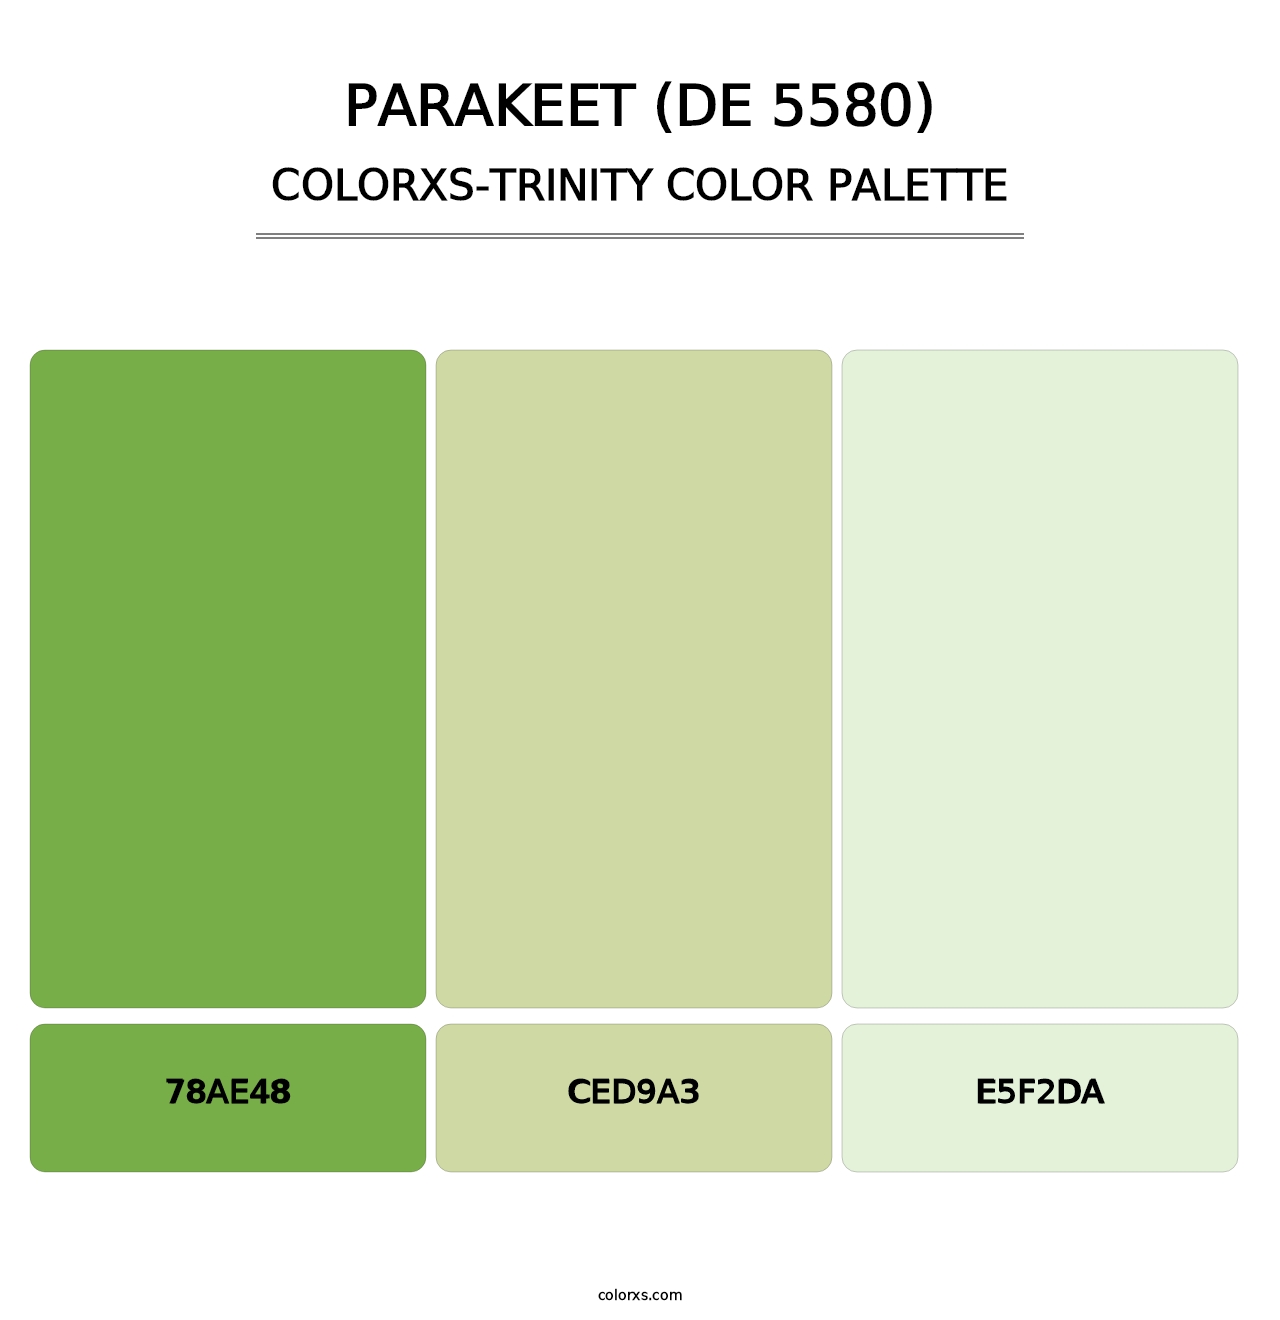 Parakeet (DE 5580) - Colorxs Trinity Palette